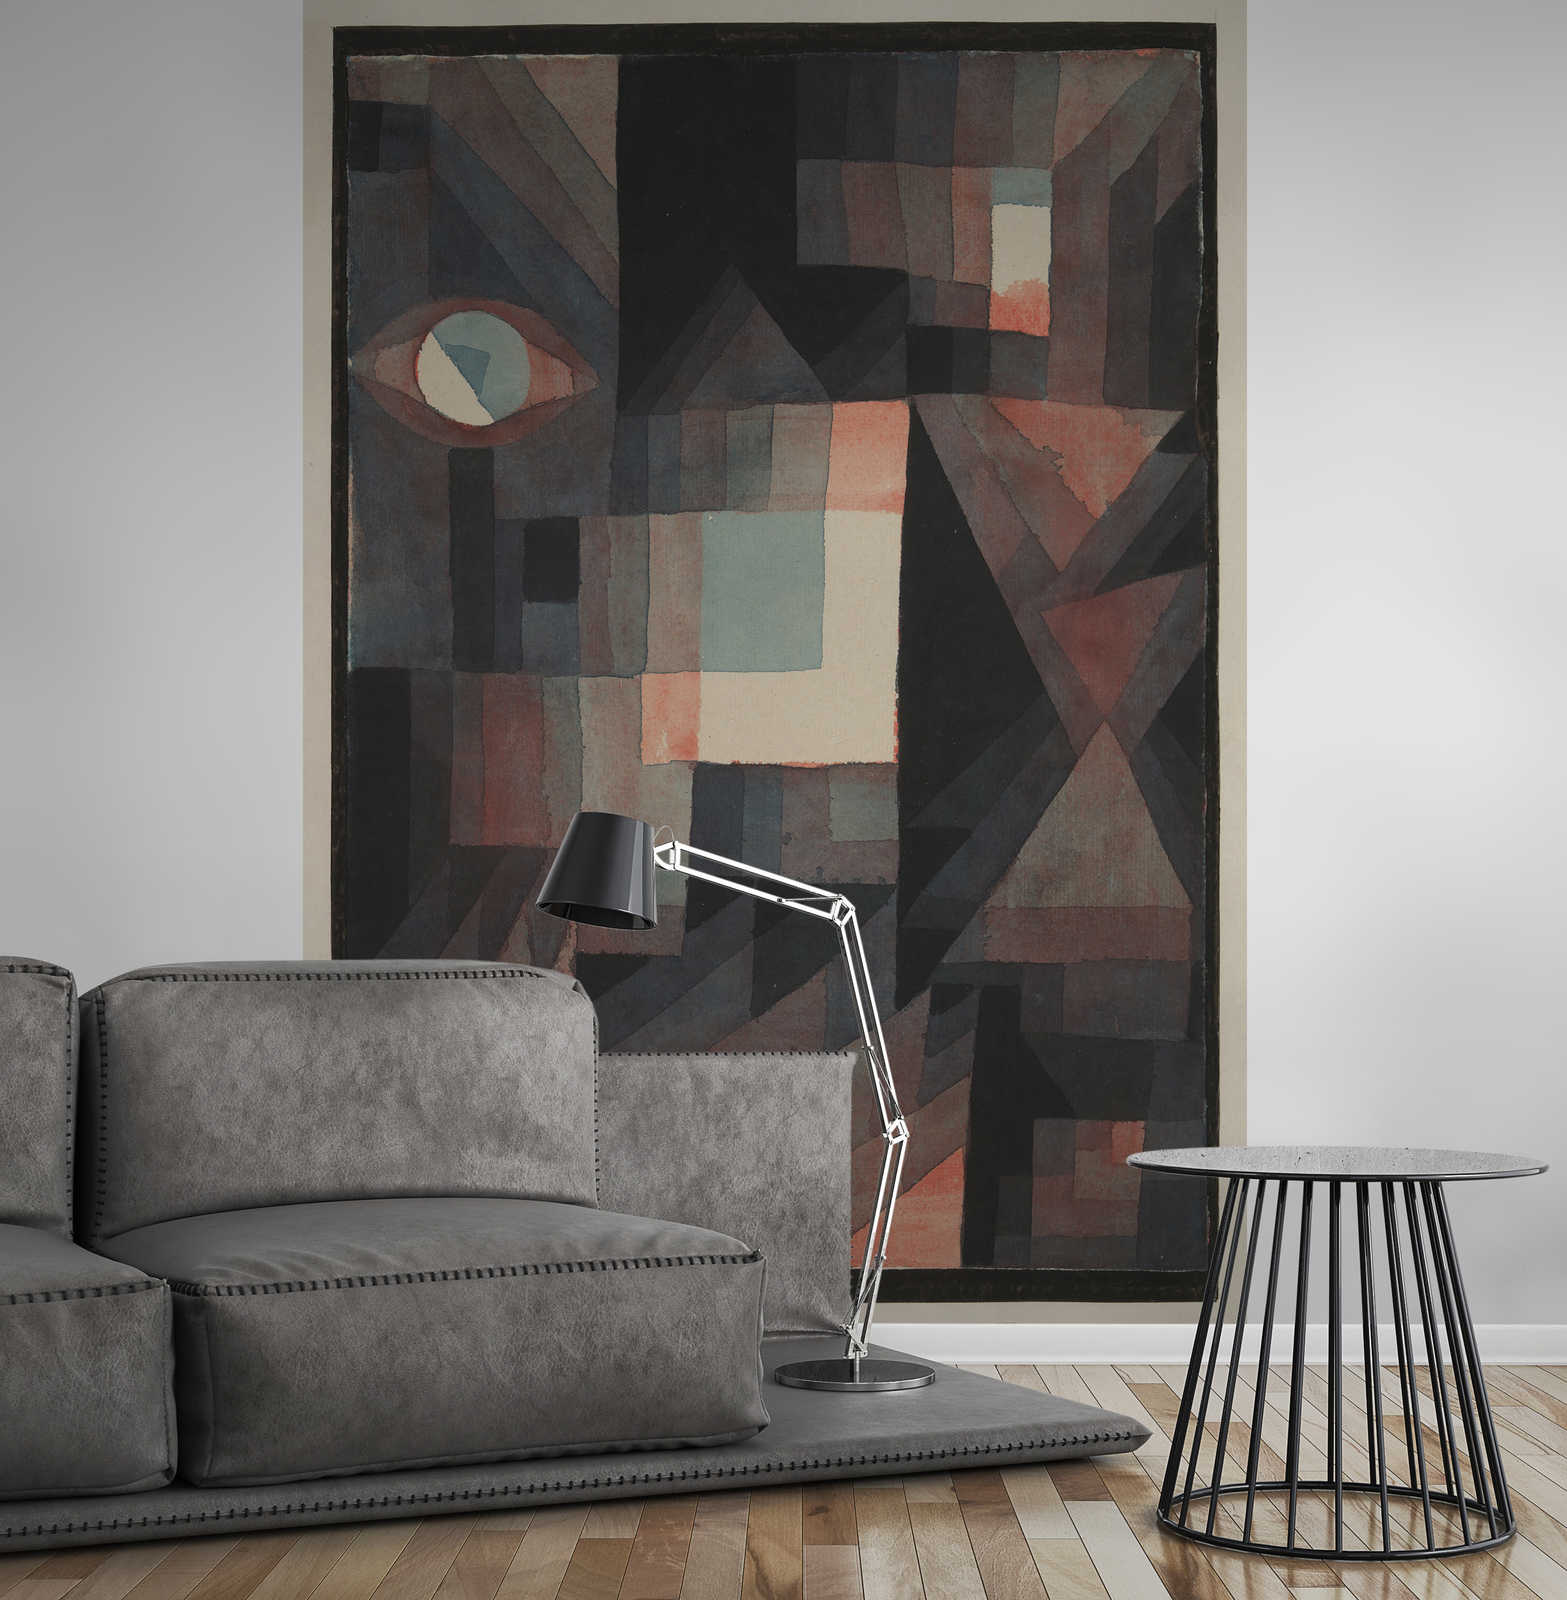             Fototapete "Abstrakt" von Paul Klee
        